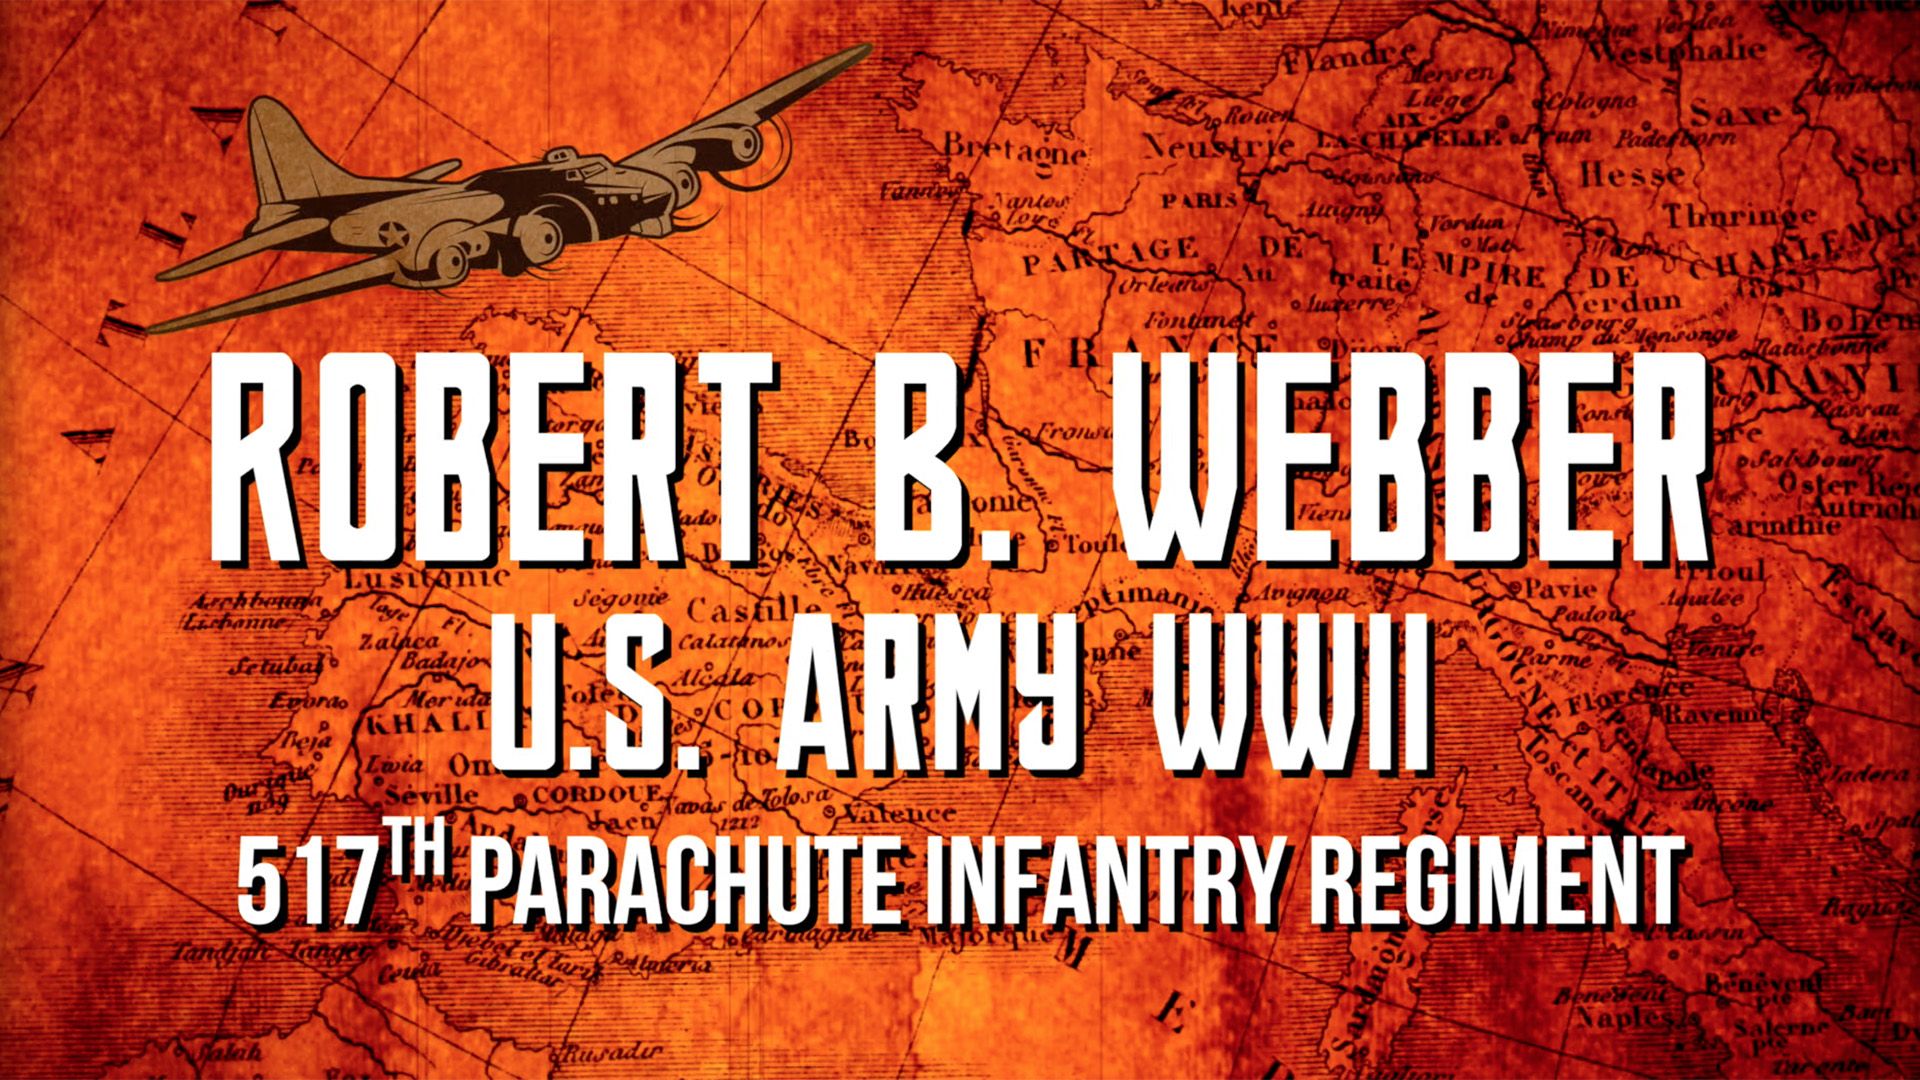 Robert B. Webber: French Legion of Honor